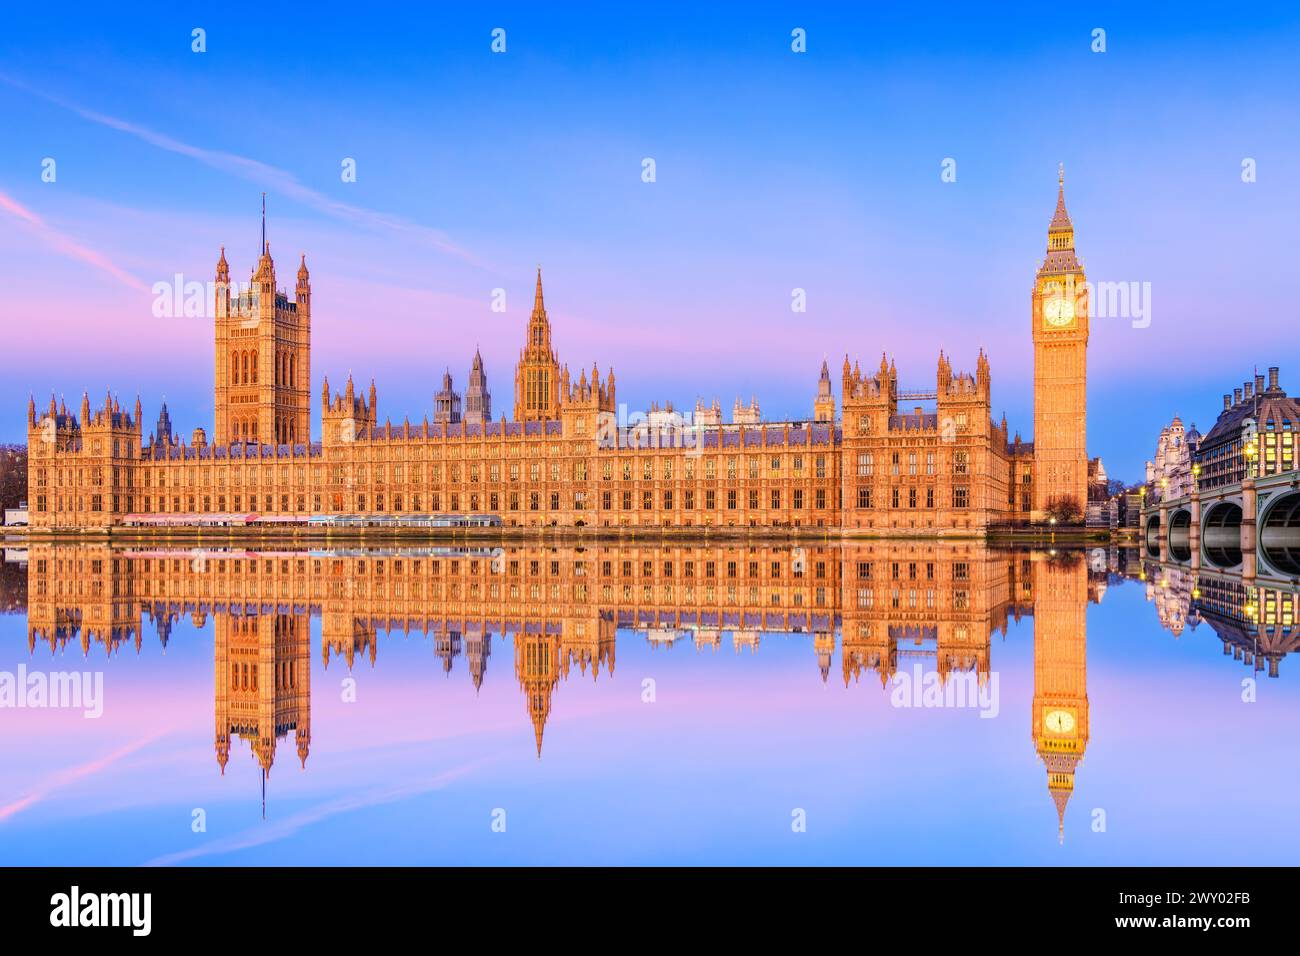 Londres, Angleterre, Royaume-Uni. Le Palais de Westminster, Big Ben et Westminster Bridge au lever du soleil. Banque D'Images